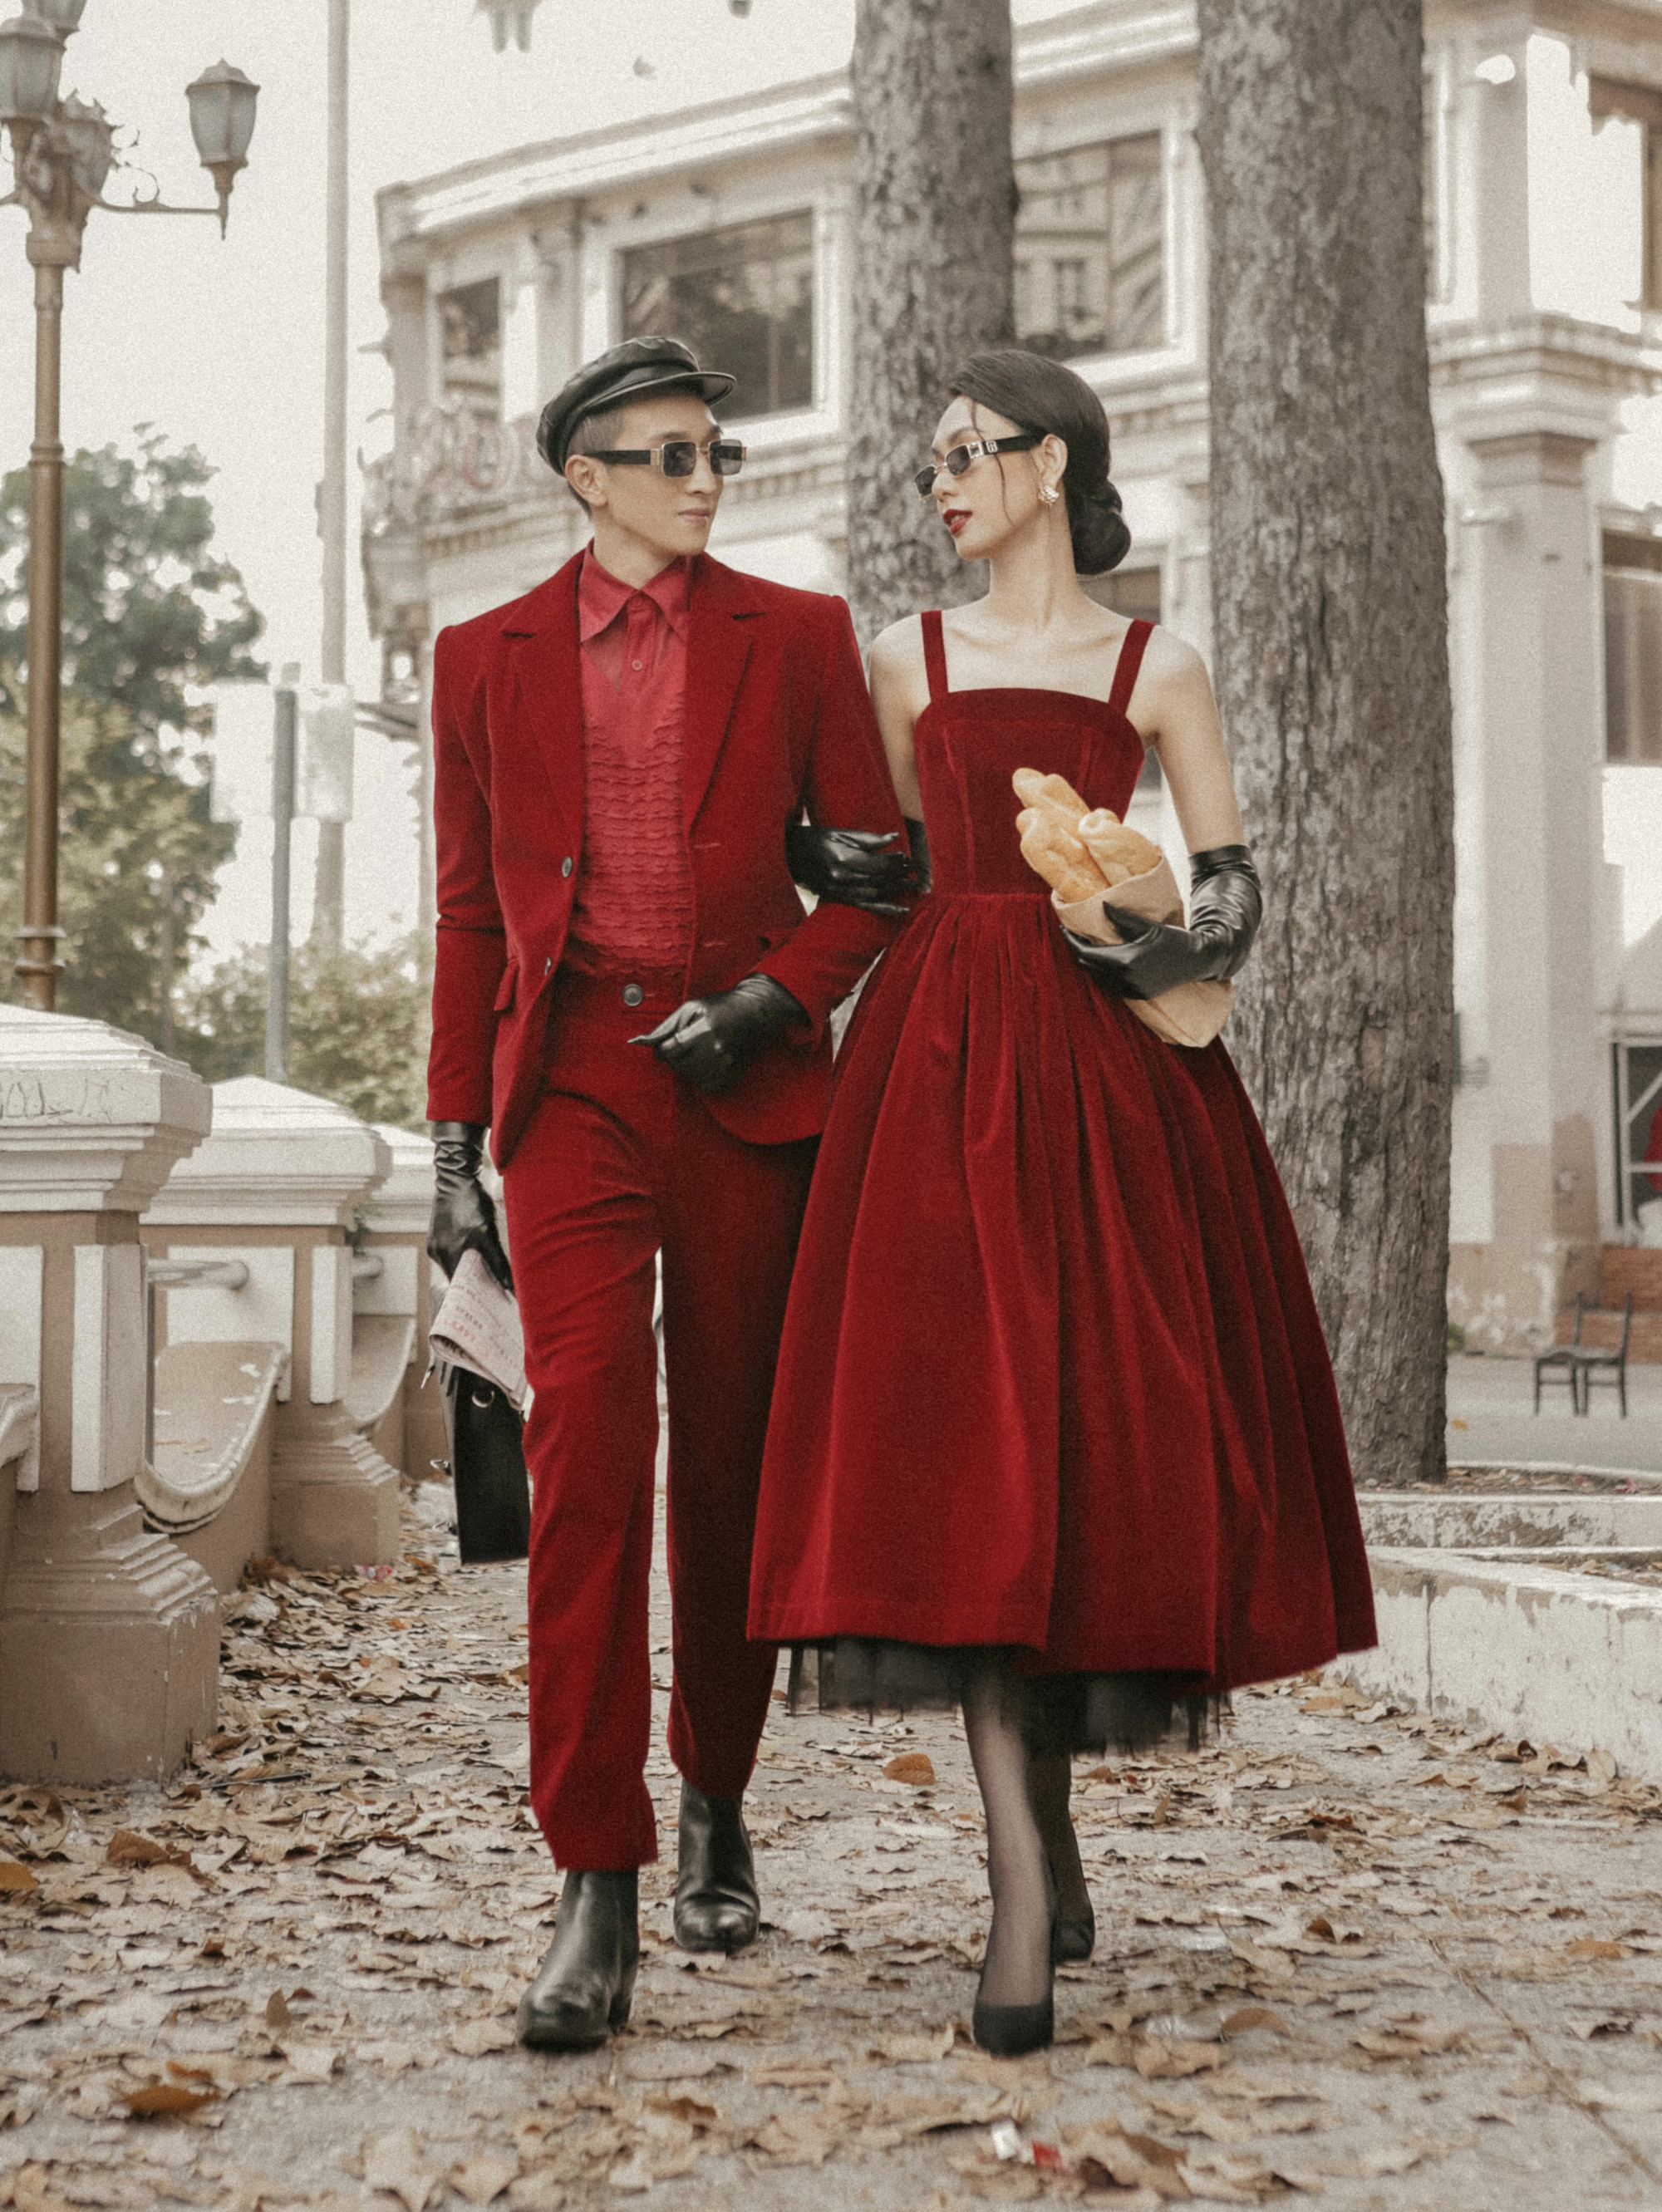 Ngập tràn sắc đỏ mùa Tết với nhà thiết kế Nguyễn Minh Công - ảnh 2